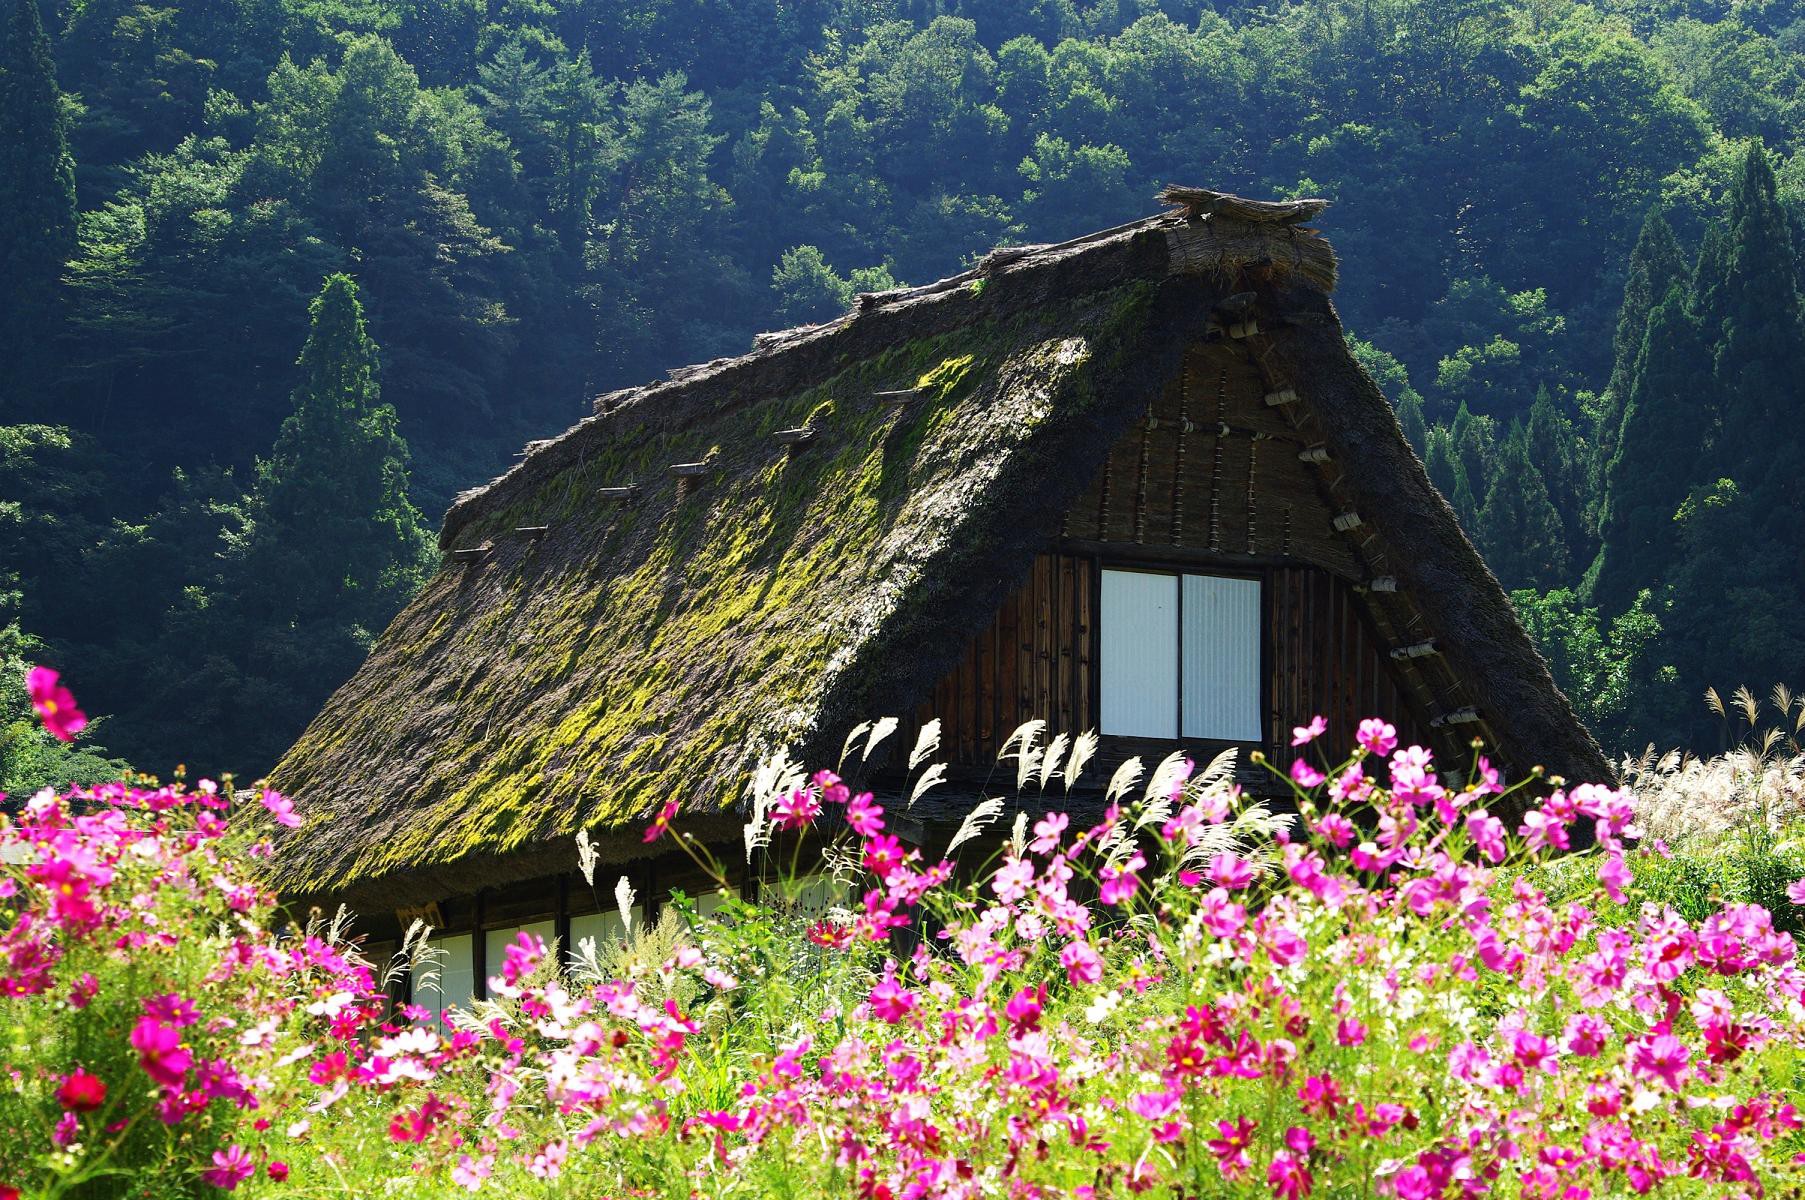 Những ngôi nhà an yên đẹp tựa tranh vẽ ở vùng nông thôn Nhật Bản